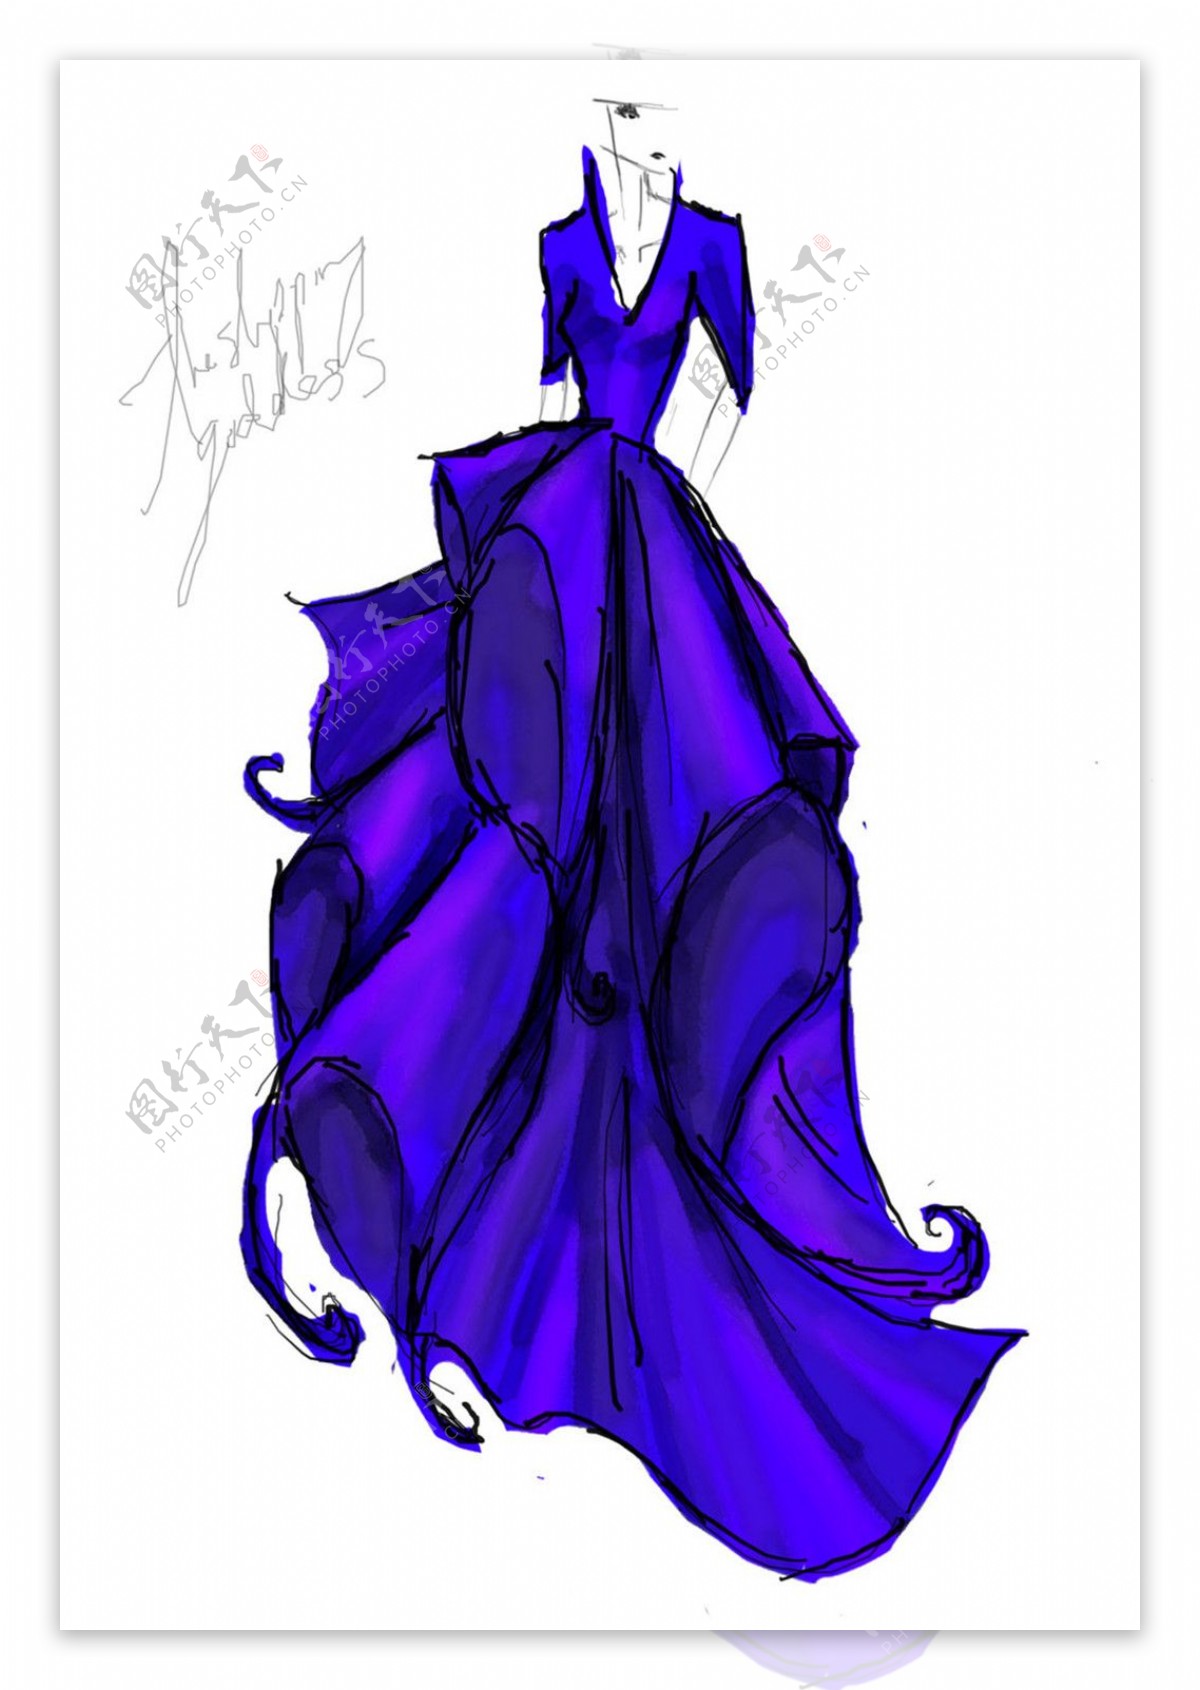 紫色长裙设计图